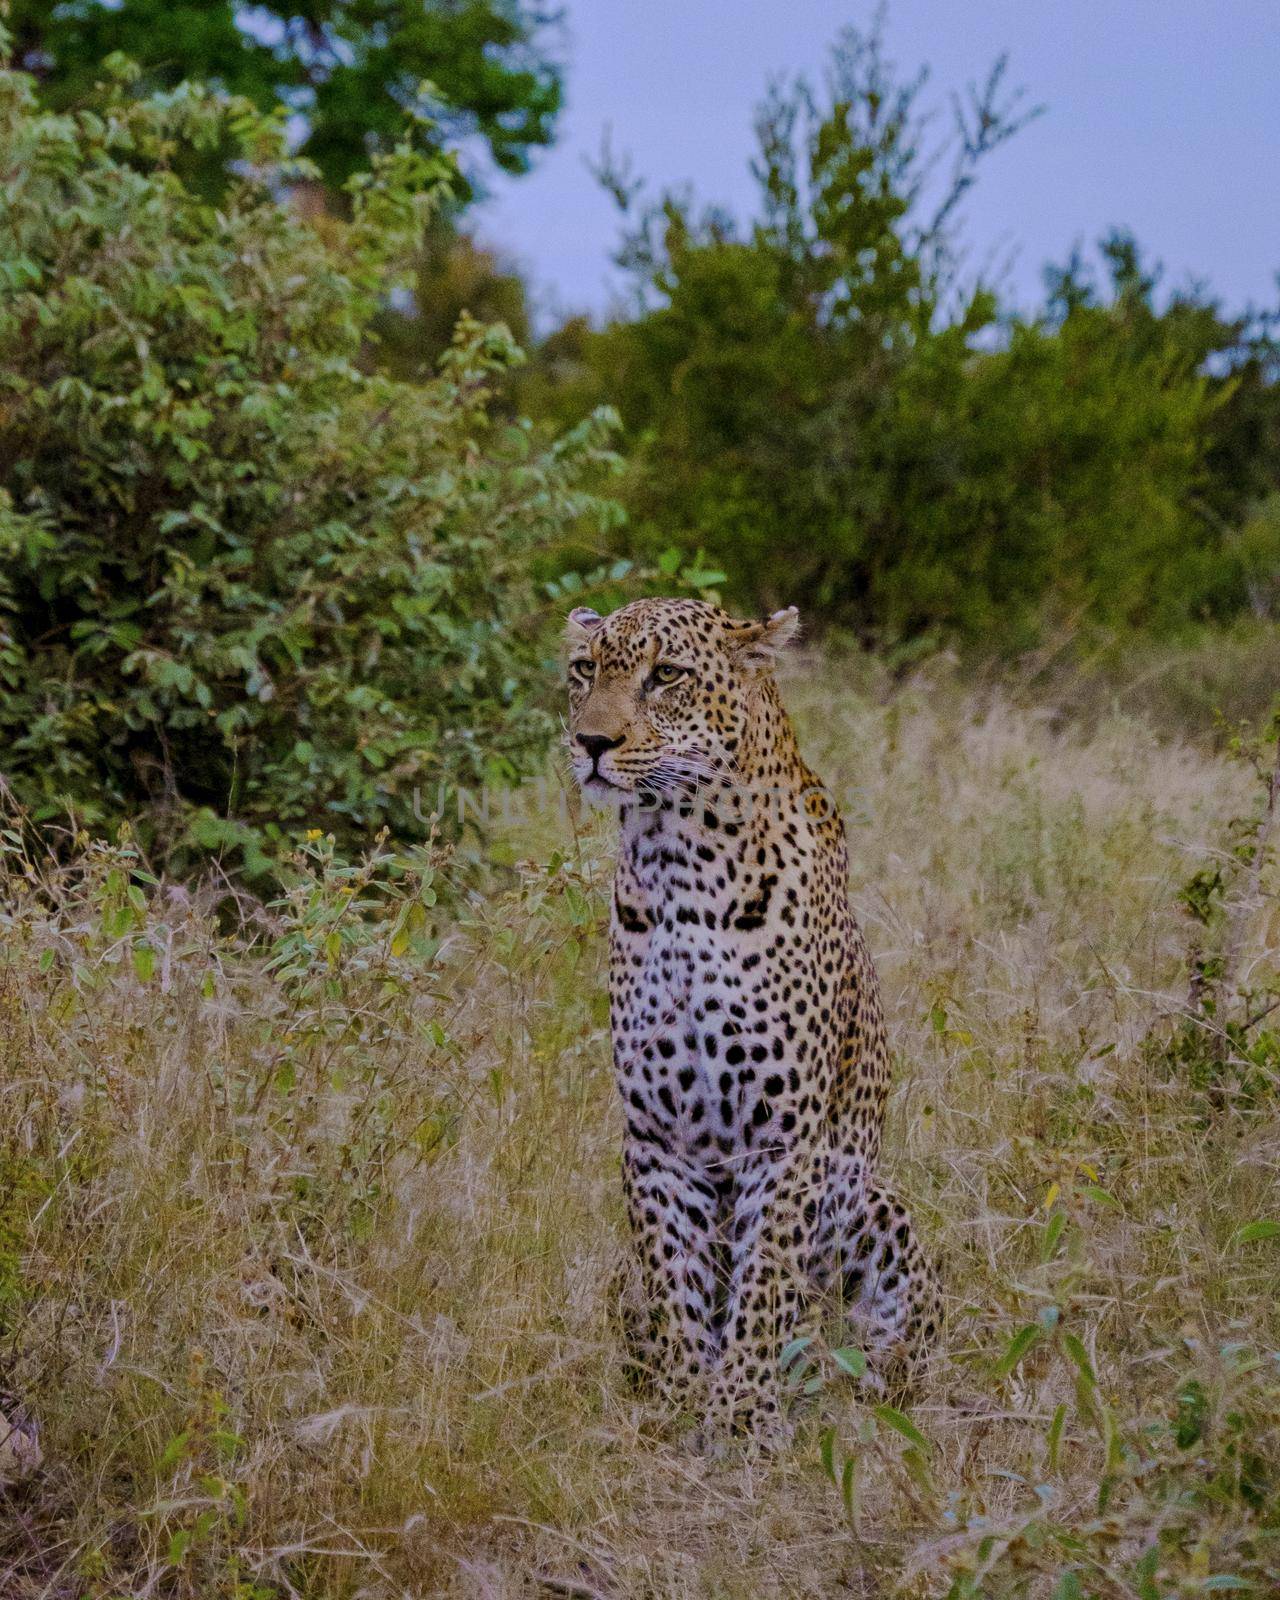 Leopard in Kruger national park South Africa by fokkebok